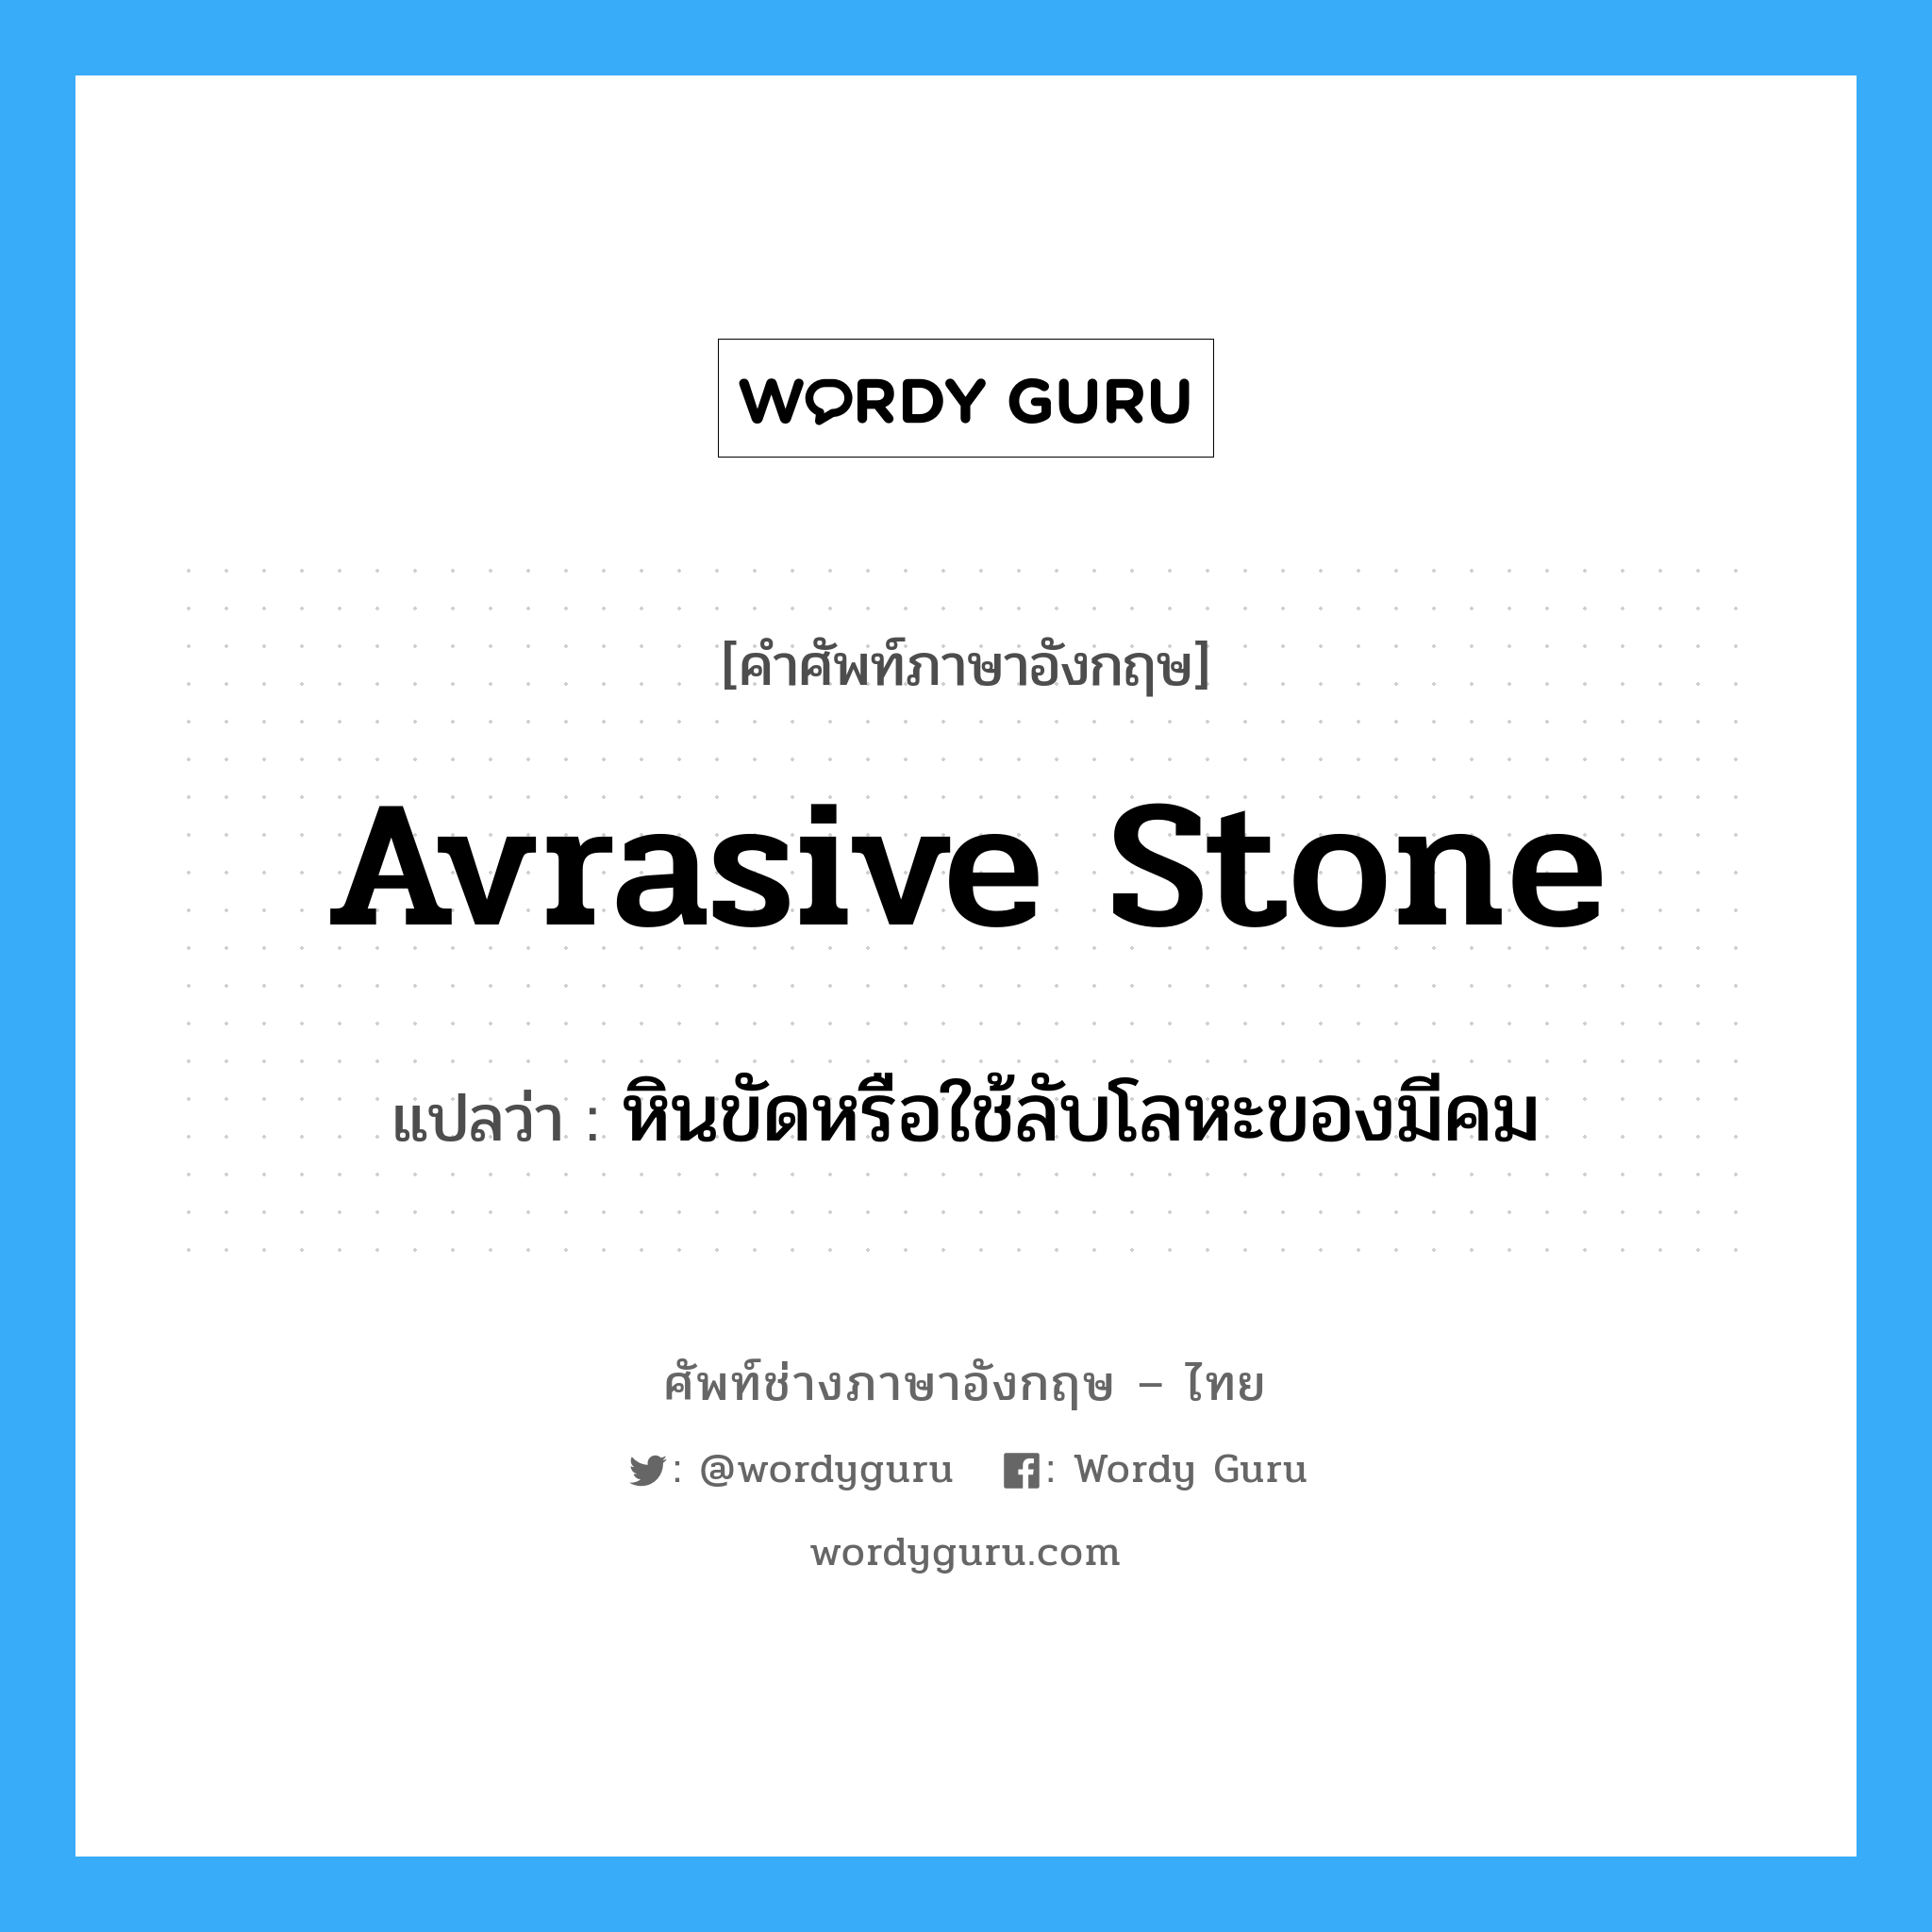 หินขัดหรือใช้ลับโลหะของมีคม ภาษาอังกฤษ?, คำศัพท์ช่างภาษาอังกฤษ - ไทย หินขัดหรือใช้ลับโลหะของมีคม คำศัพท์ภาษาอังกฤษ หินขัดหรือใช้ลับโลหะของมีคม แปลว่า avrasive stone